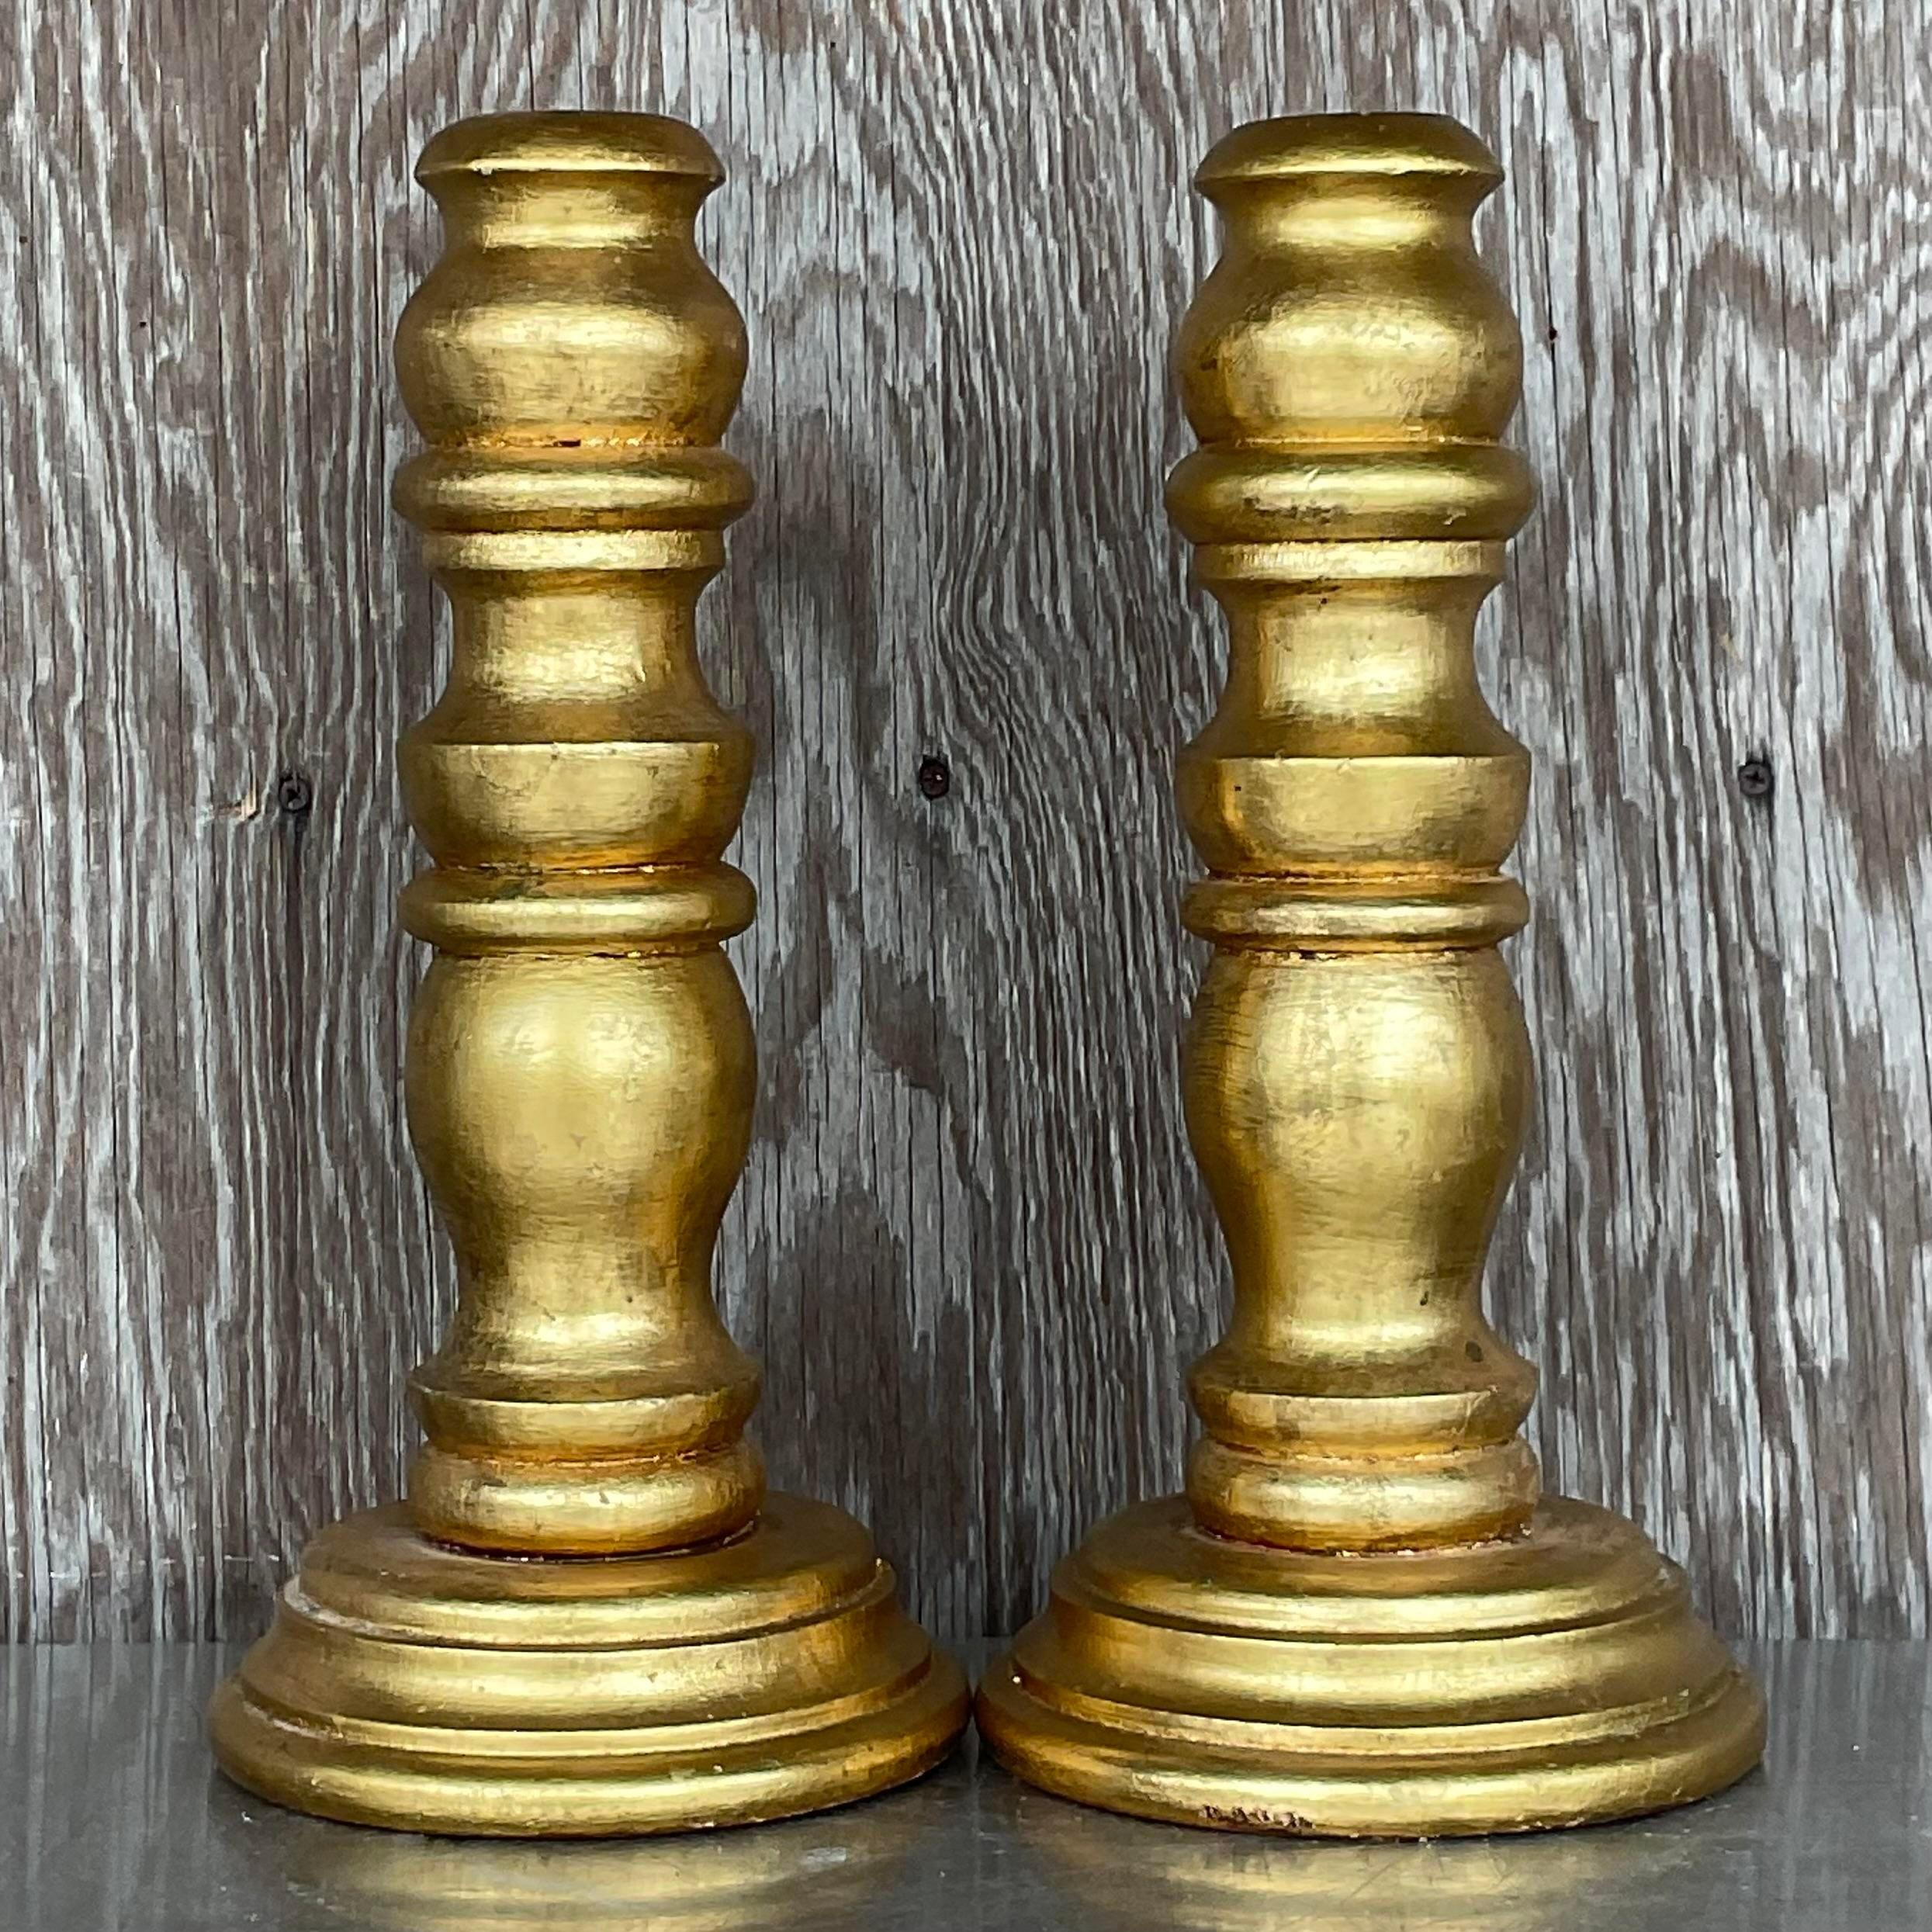 Une magnifique paire de chandeliers en bois. Design/One chic en bois tourné avec une finition dorée brillante. Acquis d'une propriété de Palm Beach.